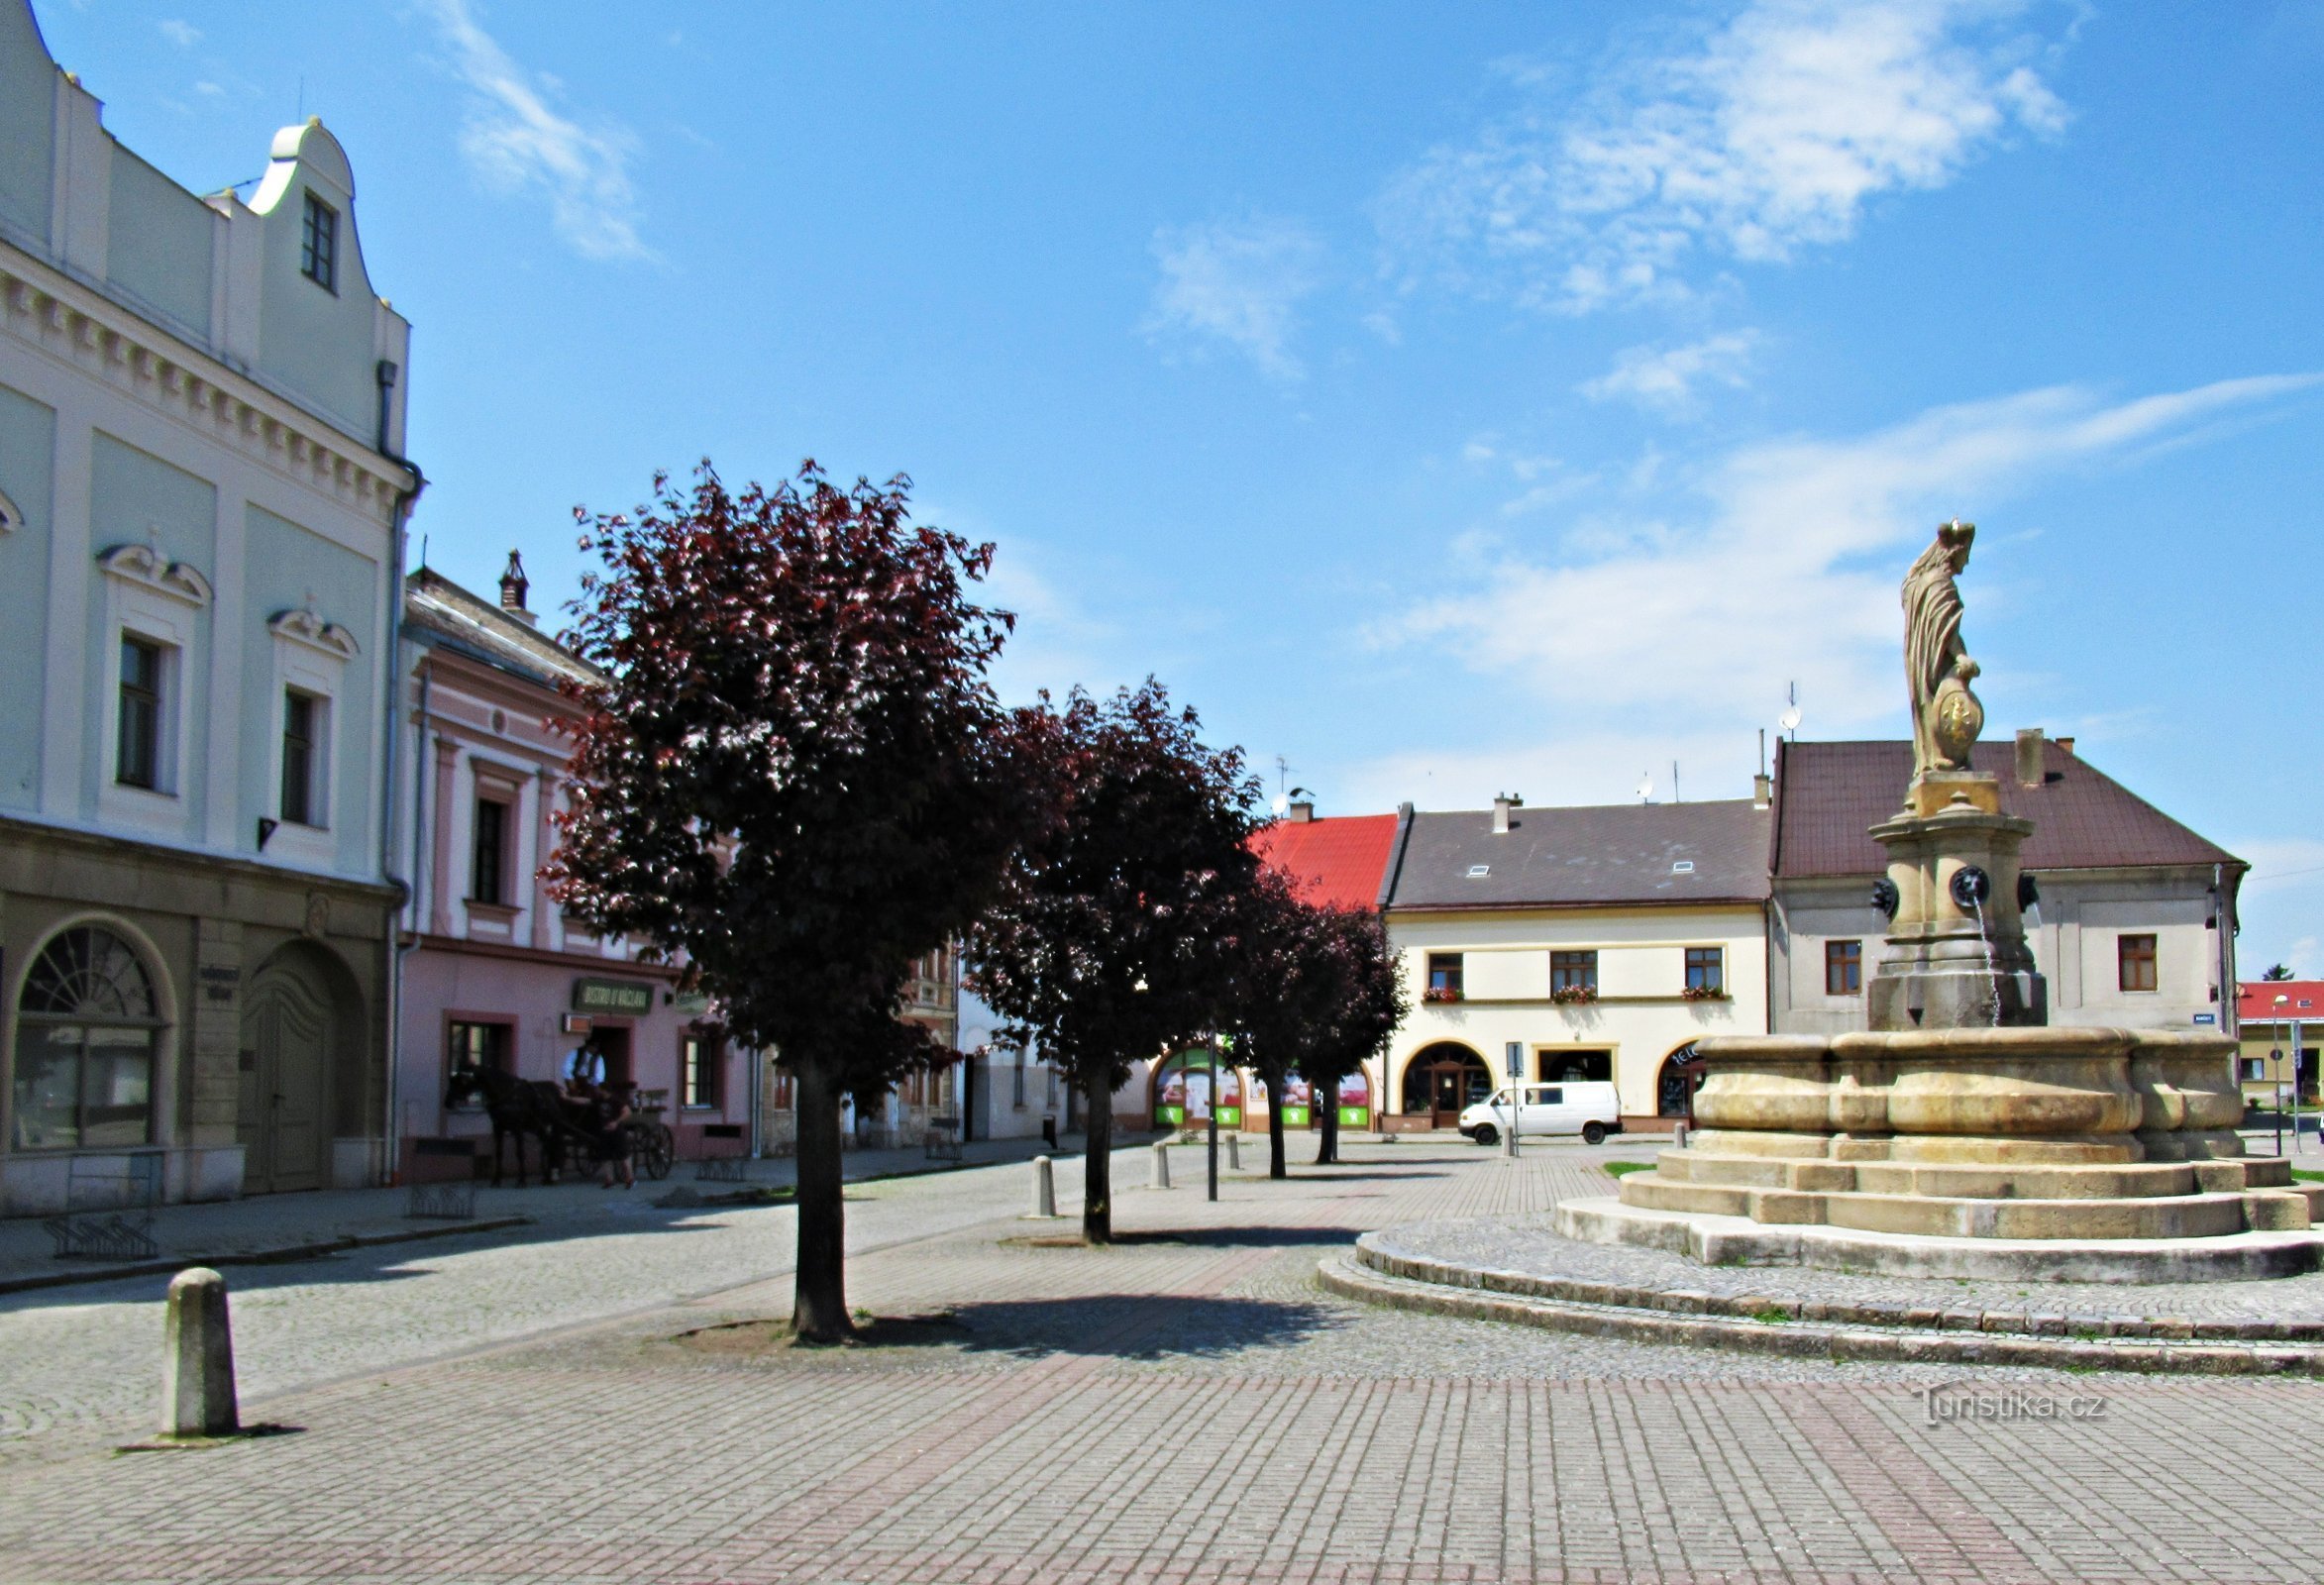 Historic fountain on the square in Tovačov